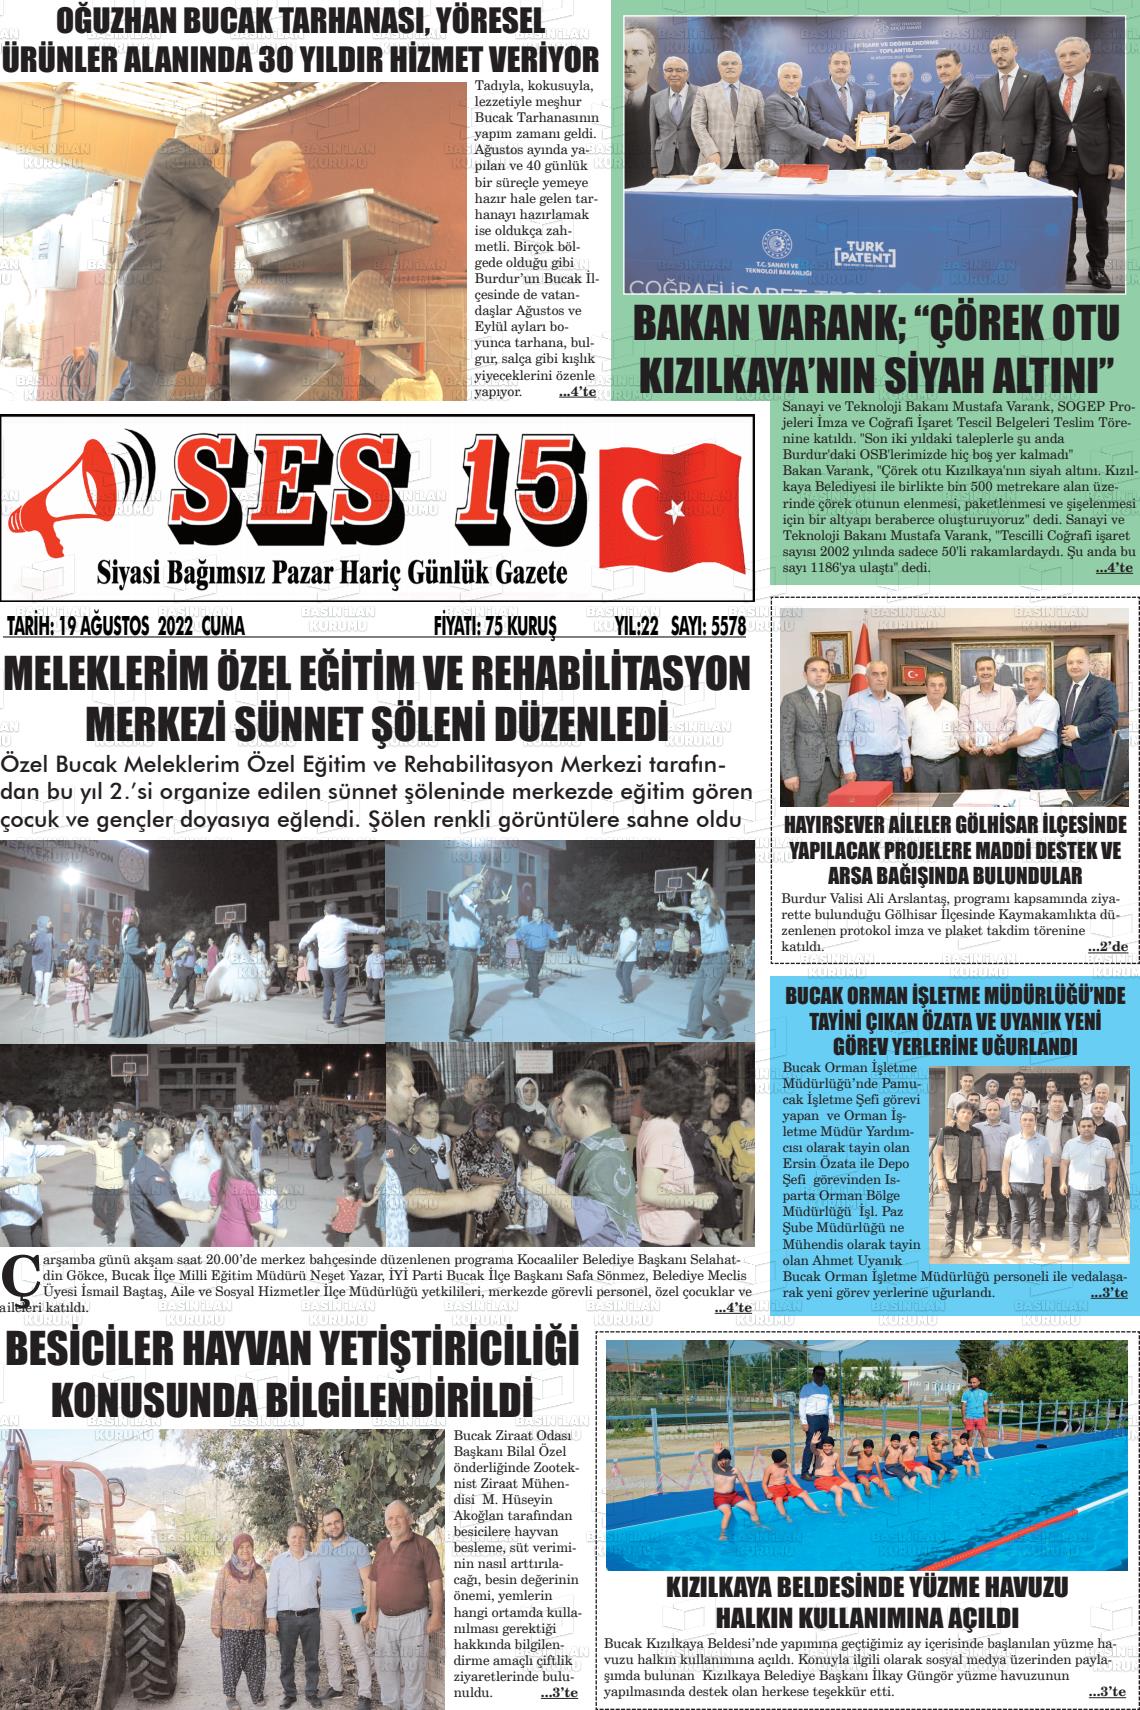 19 Ağustos 2022 Ses 15 Gazete Manşeti